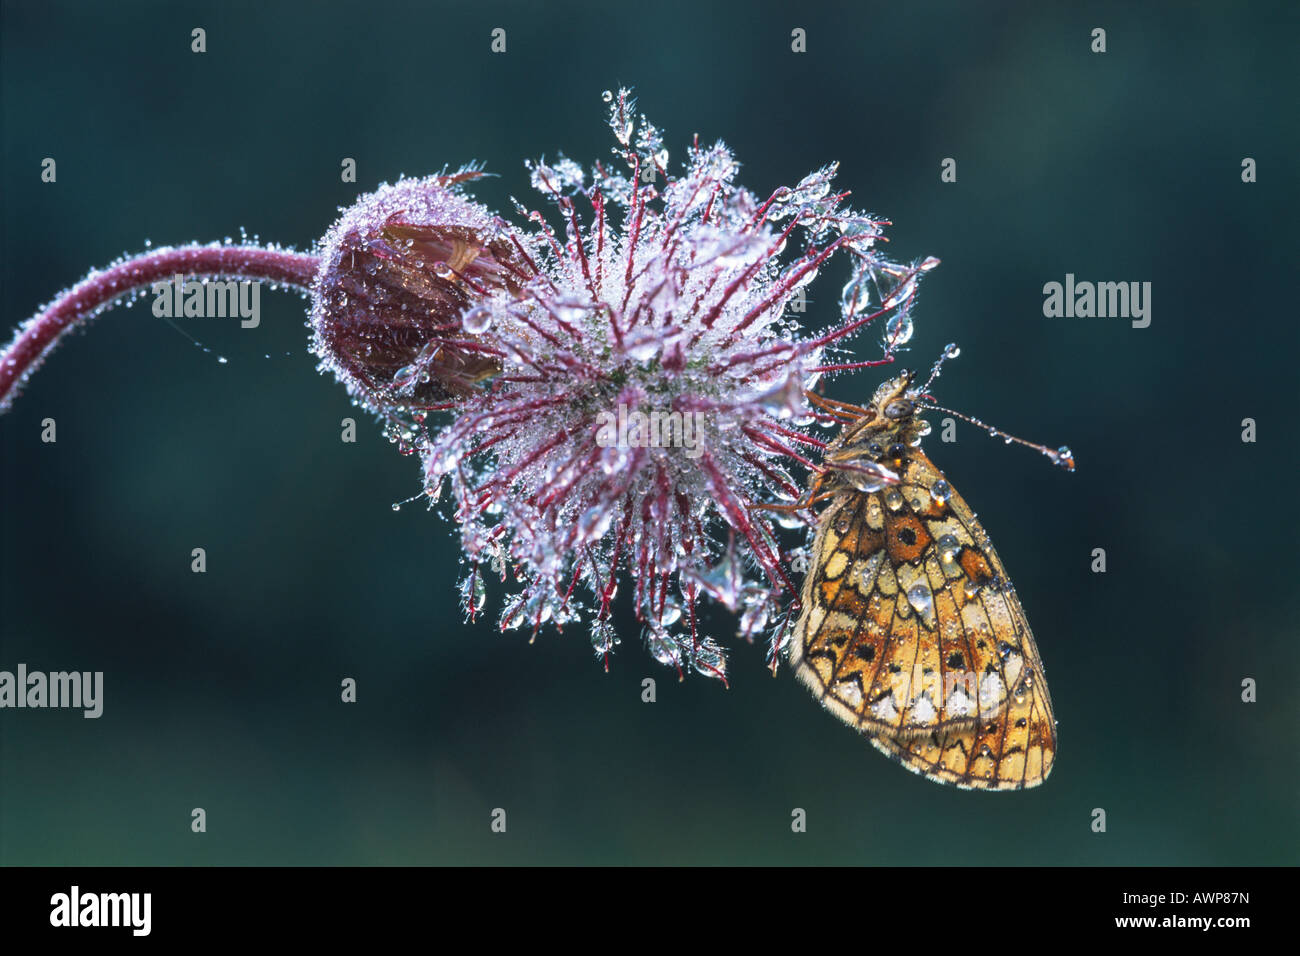 Petite perle-bordé Fritillary butterfly (Boloria selene) perché sur la fleur flétrie d'une Benoîte de l'eau (Geum rivale) couvrir Banque D'Images